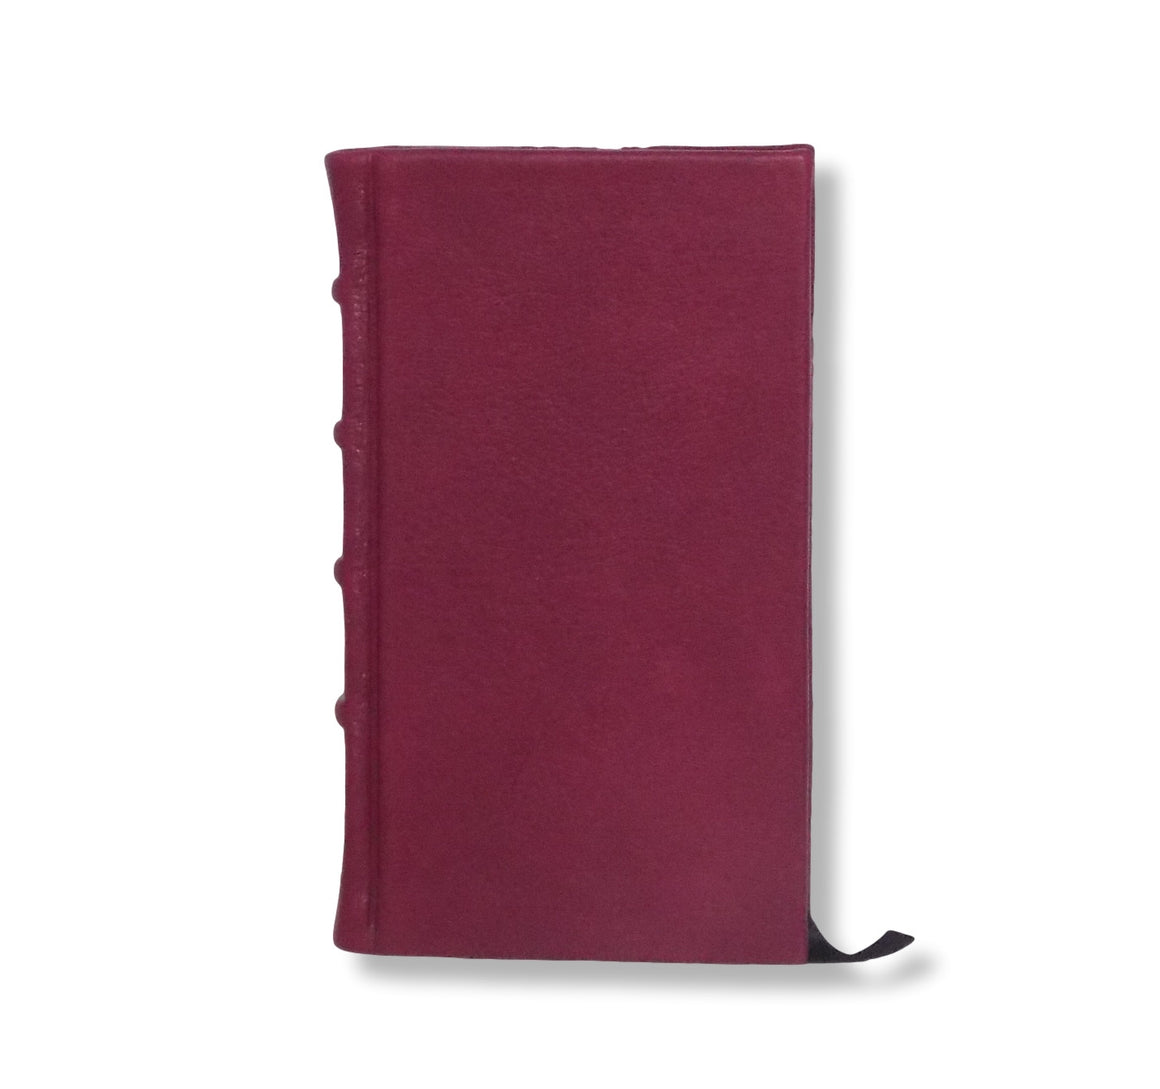 Full Crimson Leather Slimline Journal